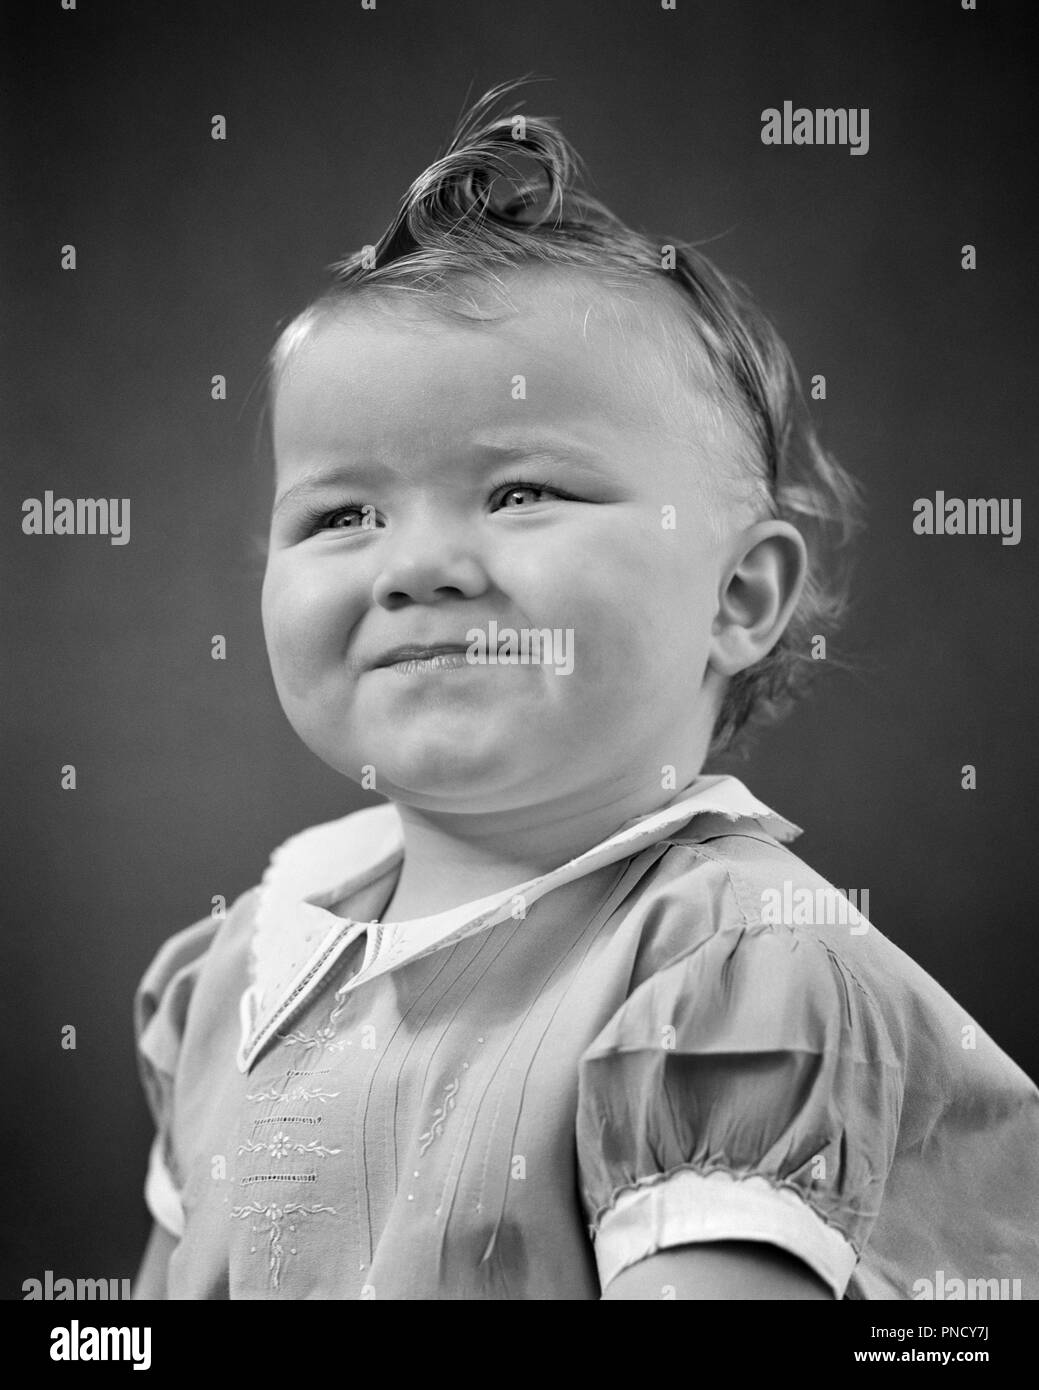 1940 Portrait Baby Mädchen lächelnd squinty Augen CURL AUF DER OBERSEITE DES KOPFES WEISSE KRAGEN UND BÜNDCHEN DRESS-b 17992 HAR 001 HARS SCHWARZ UND WEISS KAUKASISCHEN ETHNIE HAR 001 ALTMODISCH Stockfoto